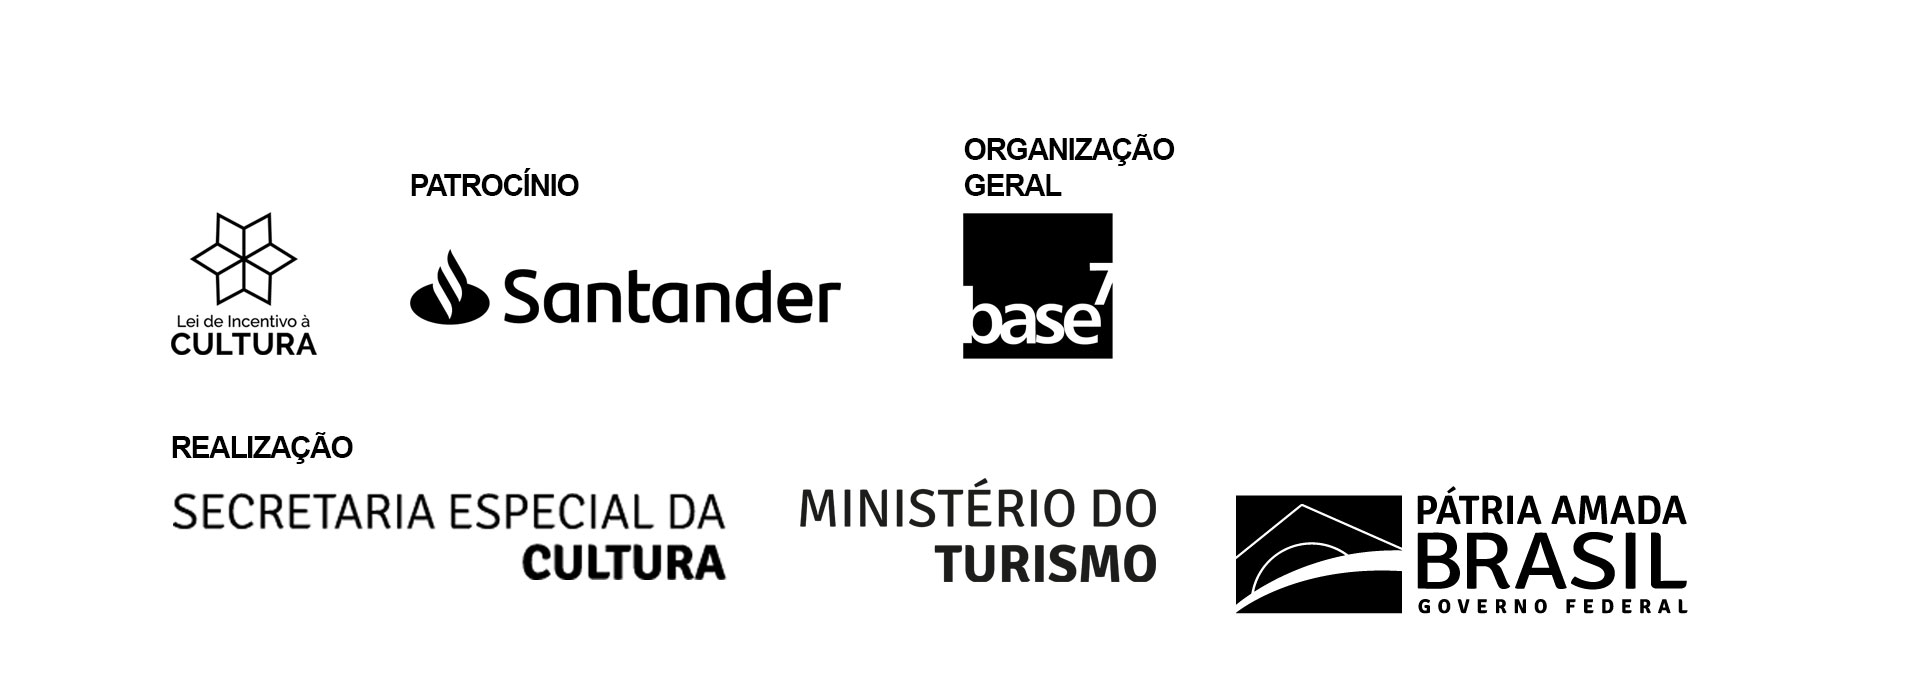 A imagem exibe o logo do farol Santander, da lei de incentivo à cultura. Em seguida, na mesma linha, o logo Santander como patrocinador e logo da base 7 como organizador geral. Na linha de baixo, como realizadores aparecem os logos da secretaria especial da cultura, ministério do turismo e do Governo Federal do Brasil.